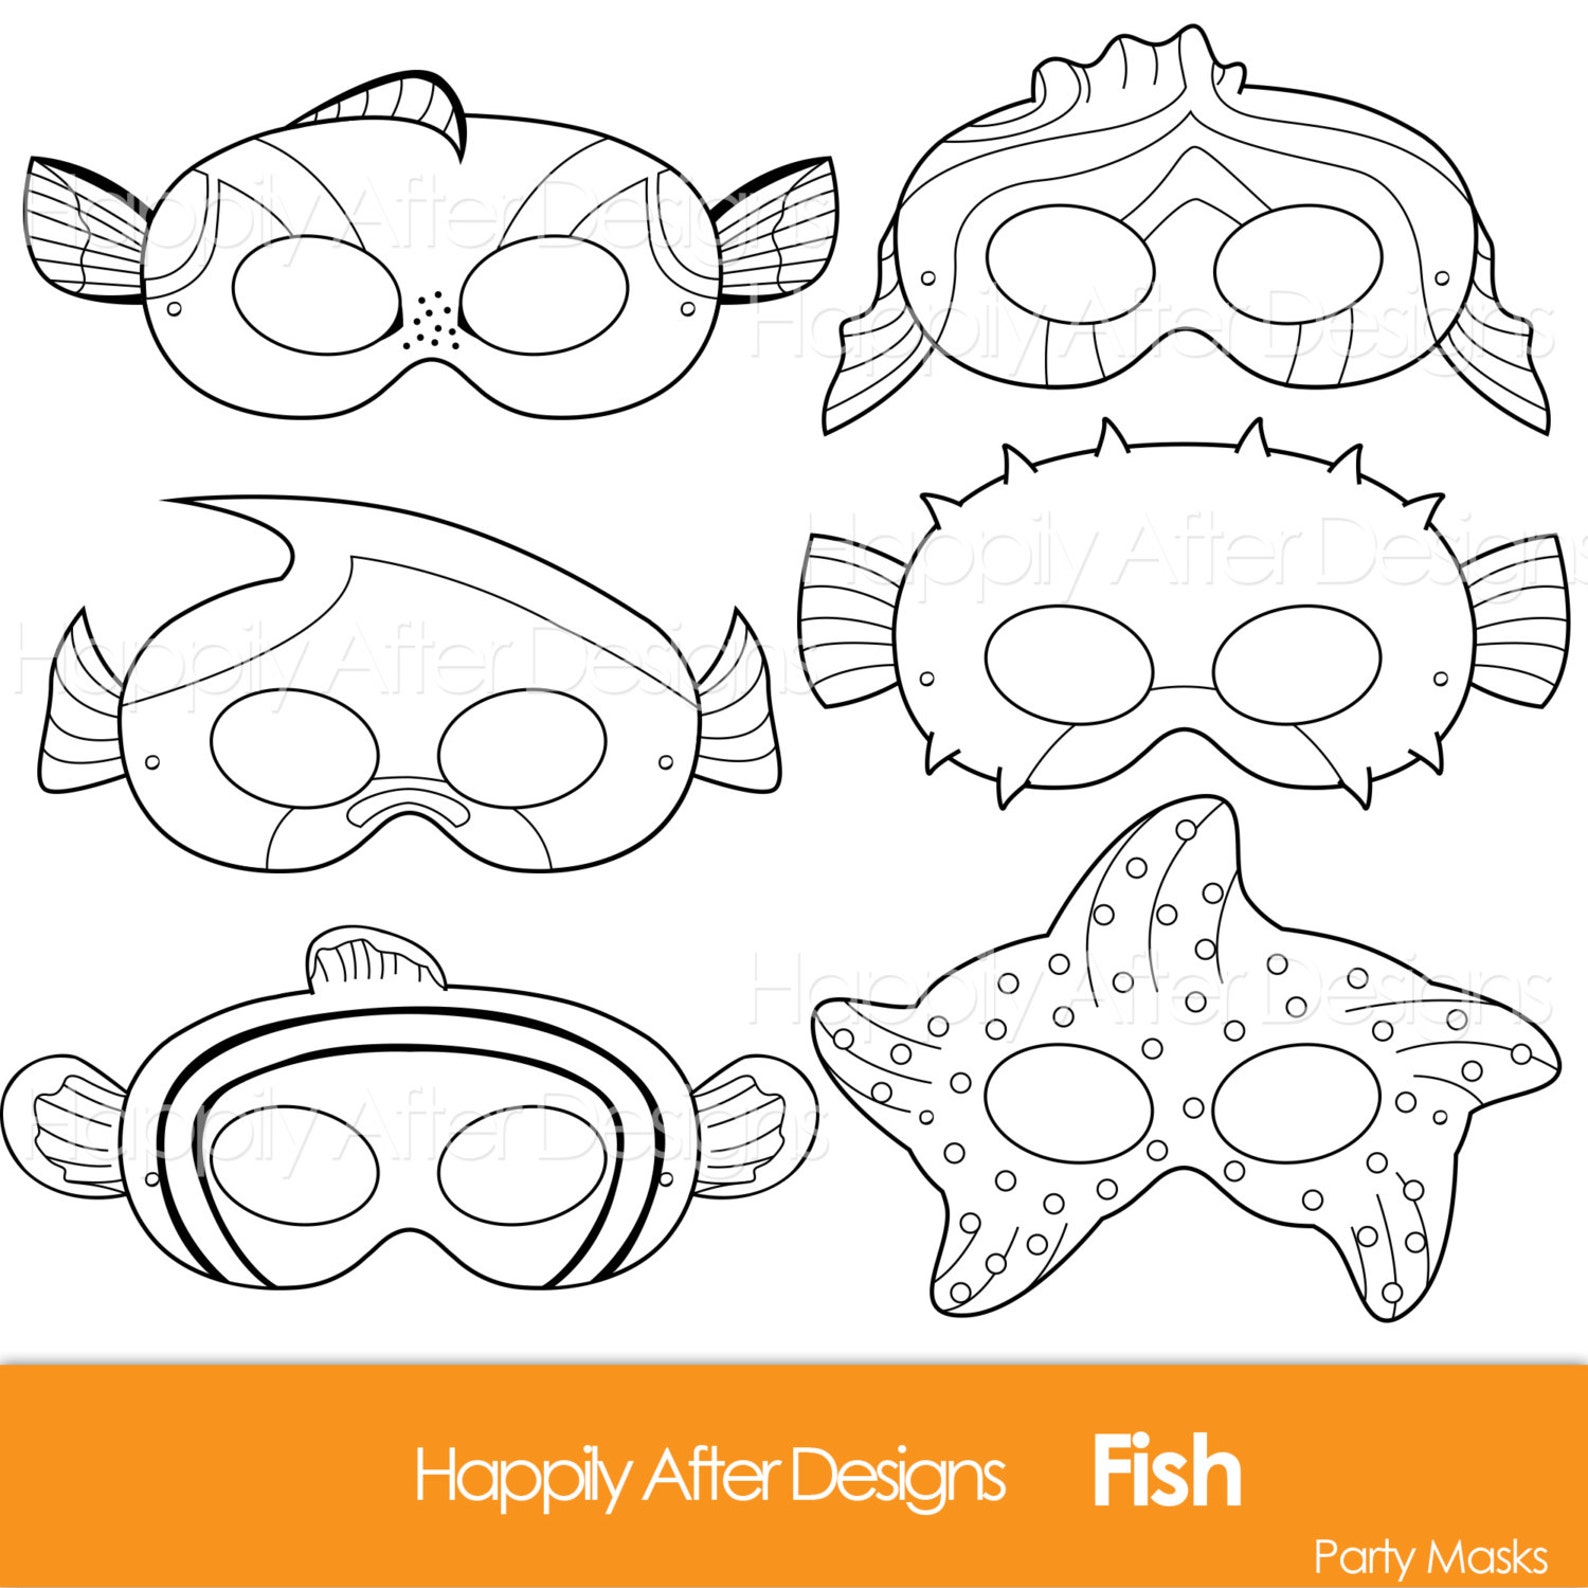 Шаблон масок для детей в детском саду. Трафарет маски рыбка. Маски на морскую тему для детей. Маска рыбка. Карнавальная маска рыбка.